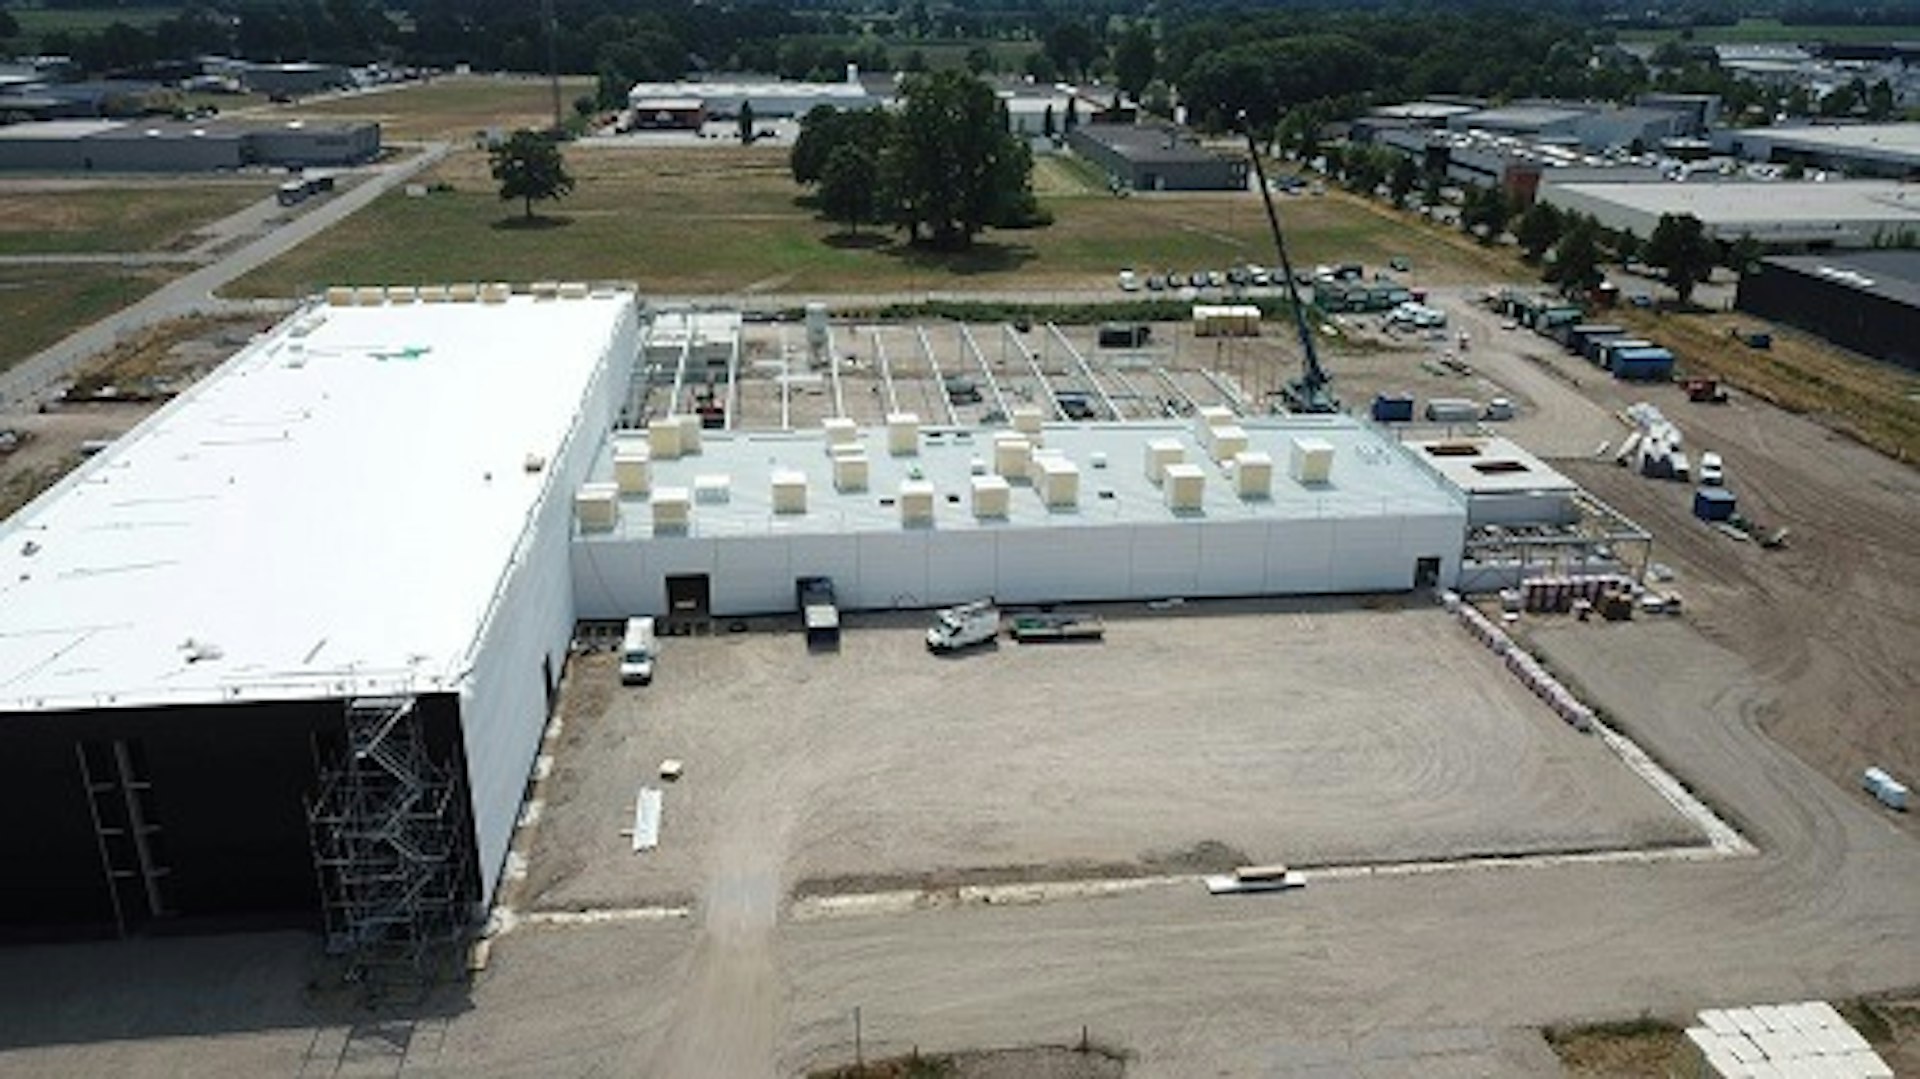 New Van Raam building with warehouse 